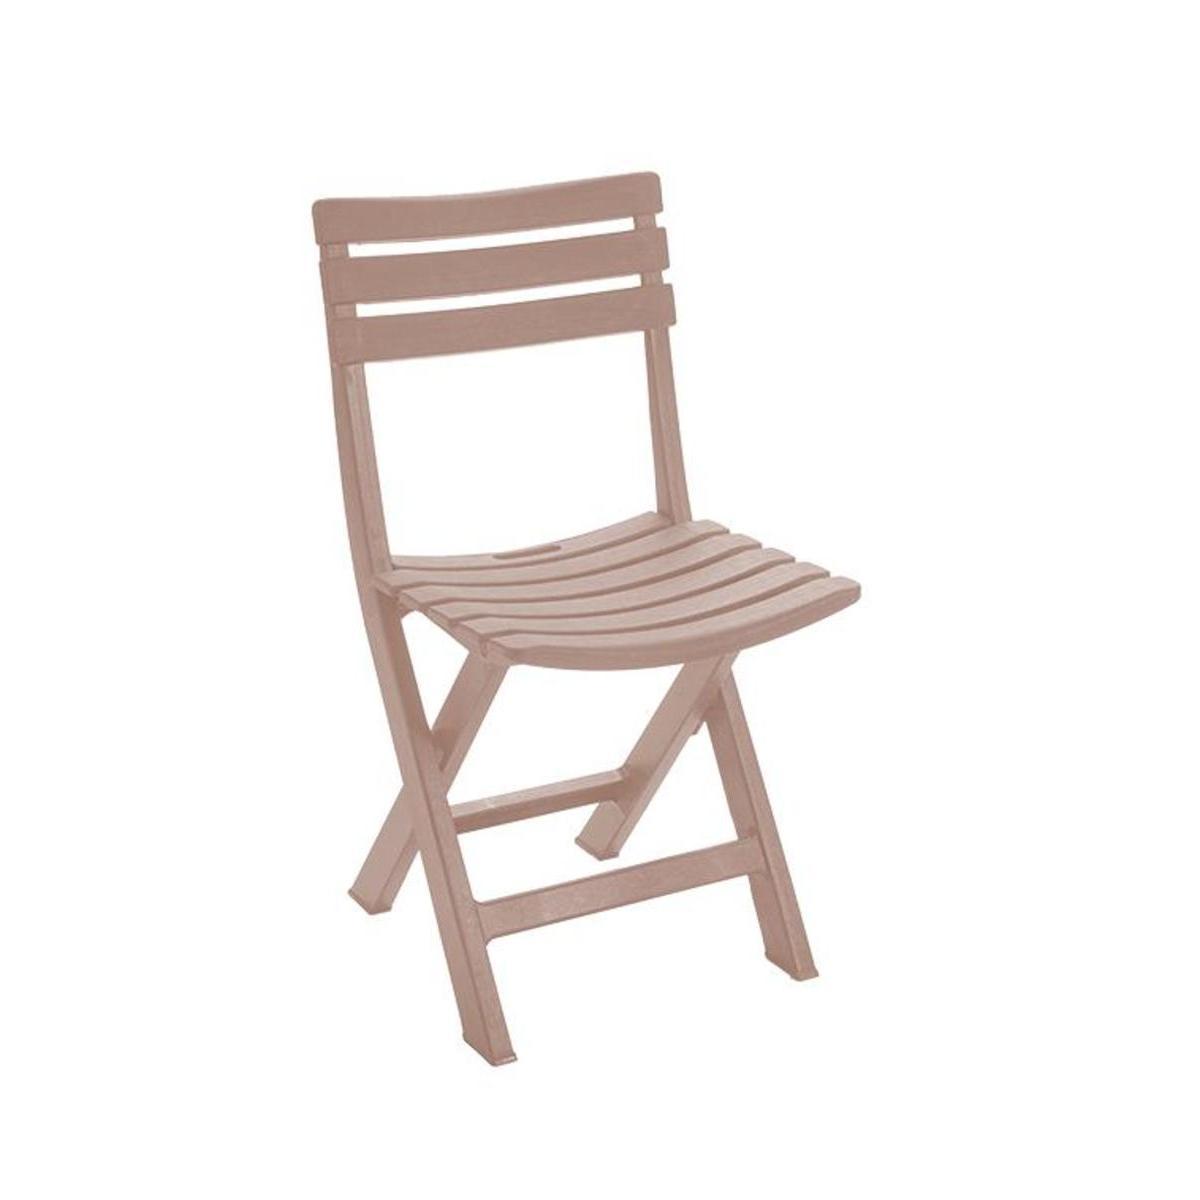 Chaise pliante effet bois - 44 x H 78 x 41 cm - Taupe